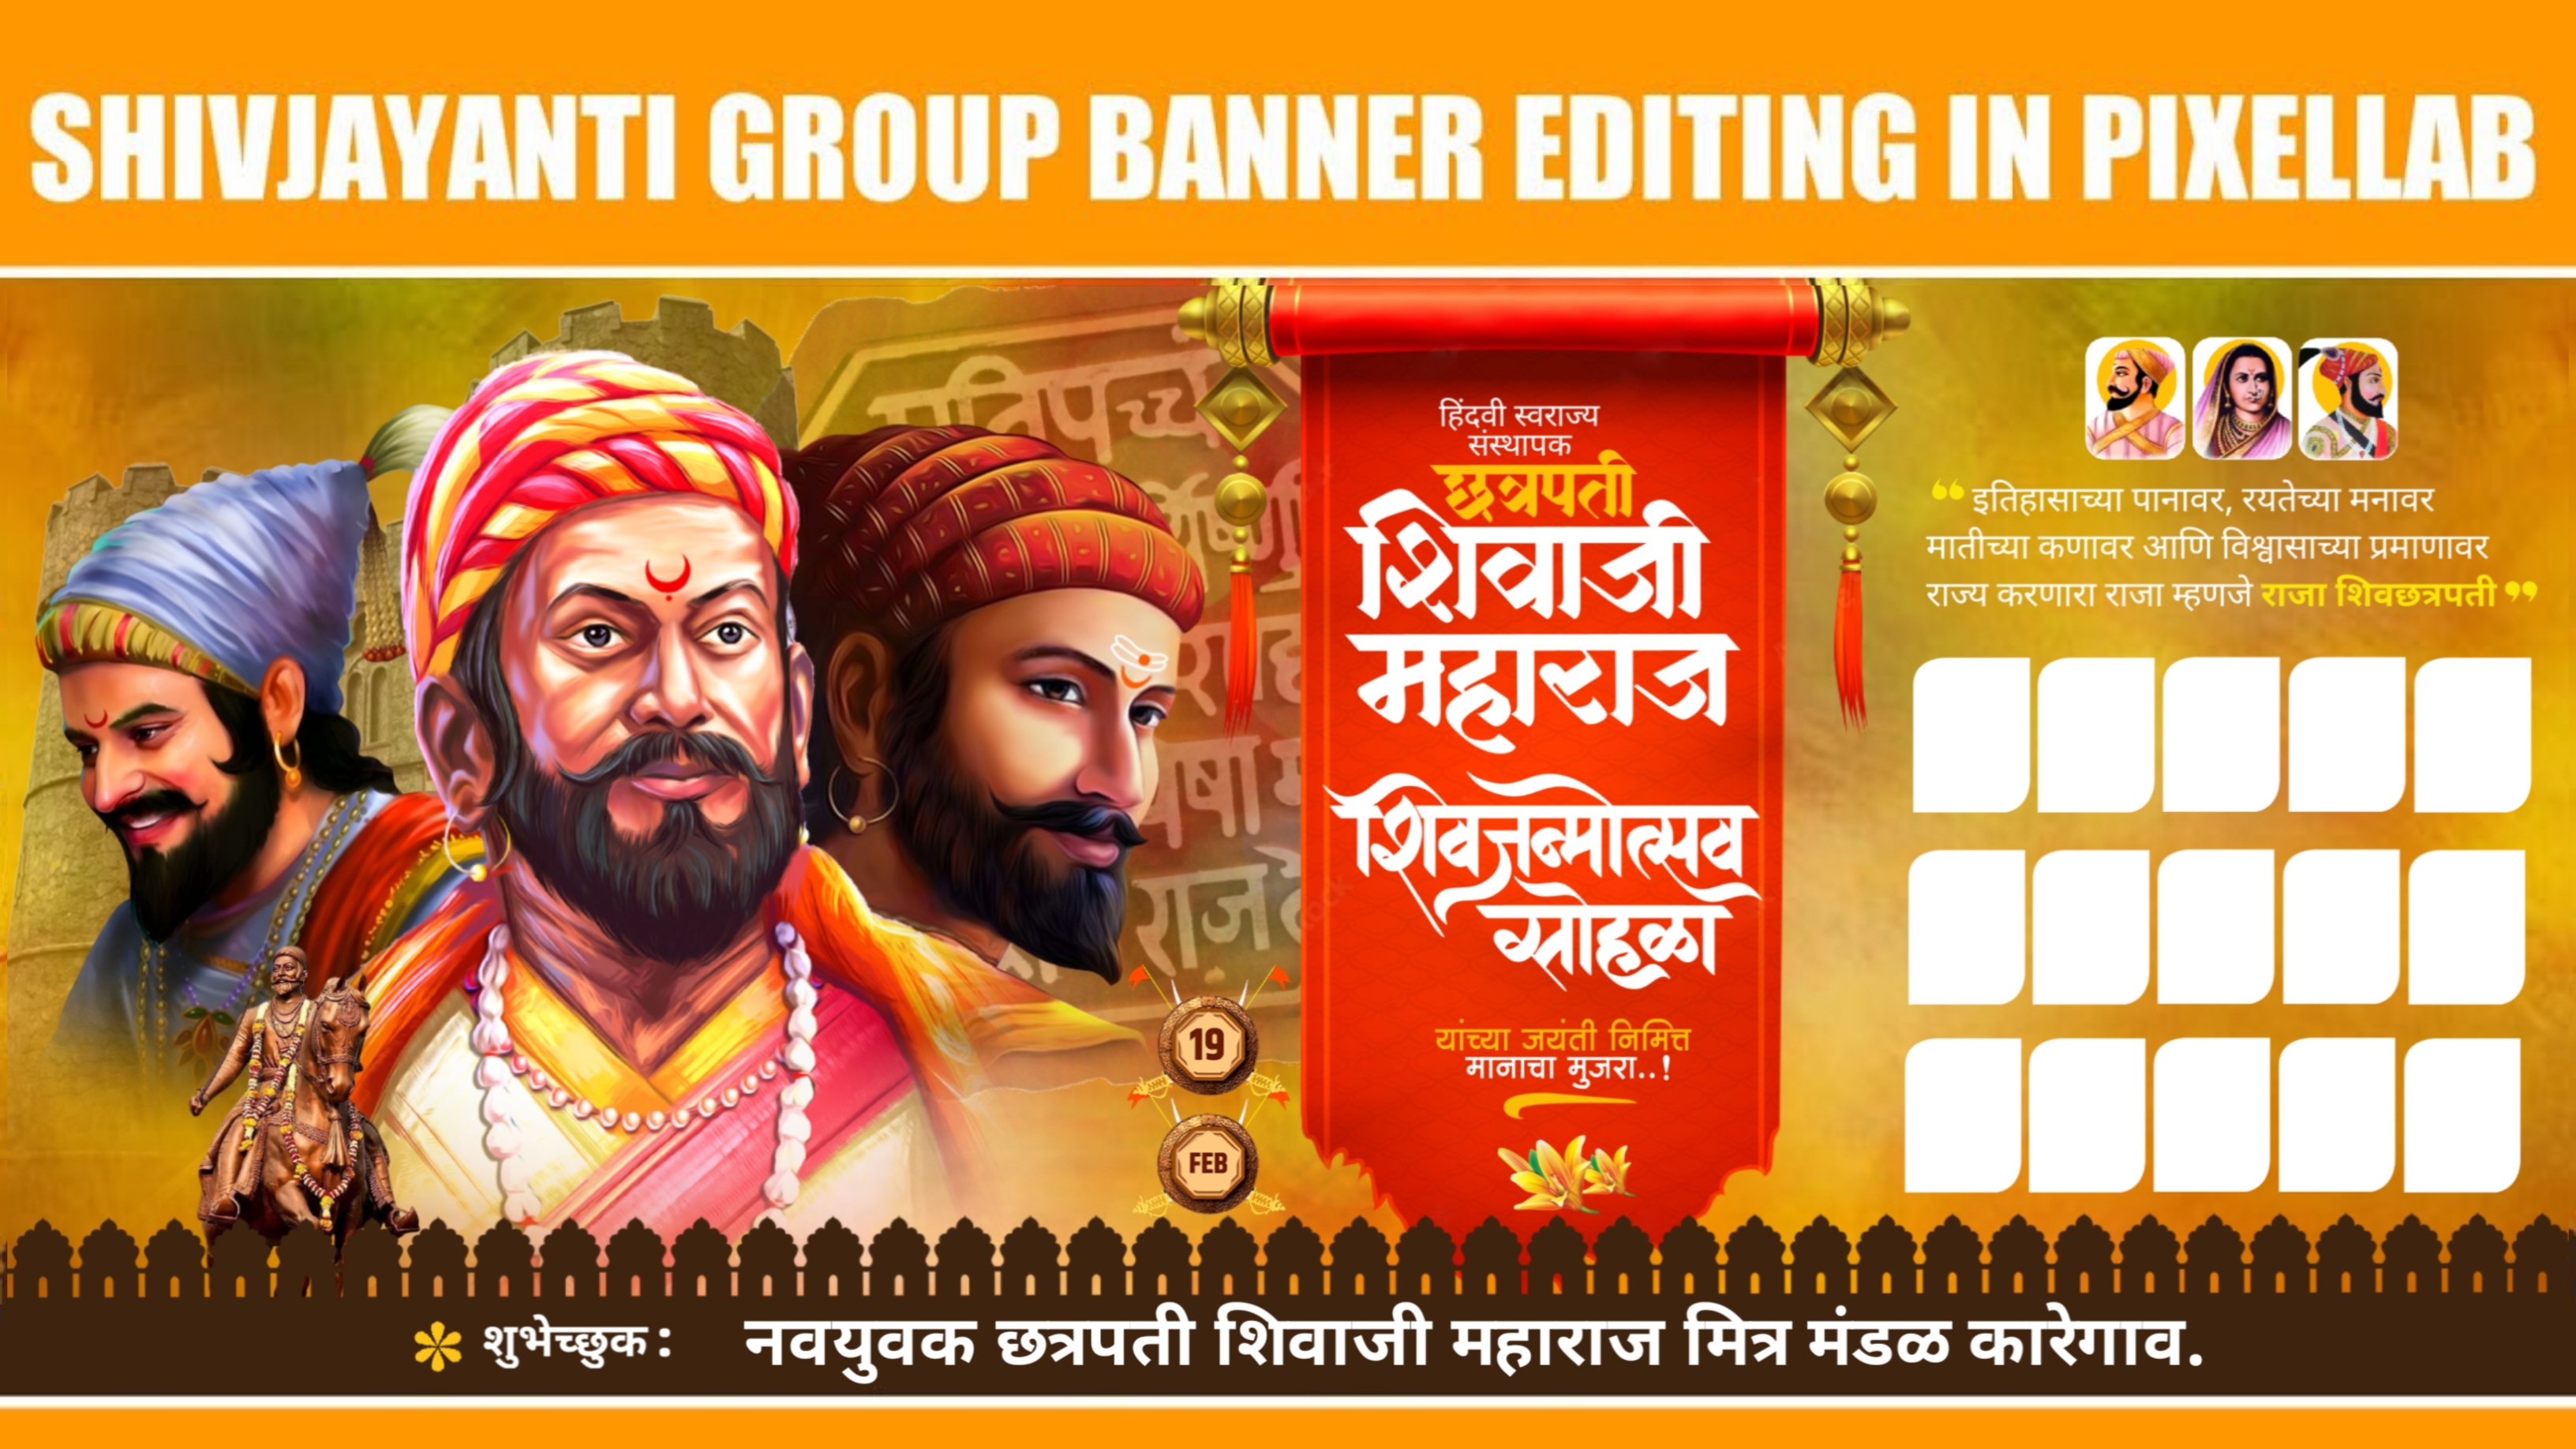 Shivjayanti Banner Editing | shivjayanti banner editing | Shivjayanti Group Banner Editing Plp File